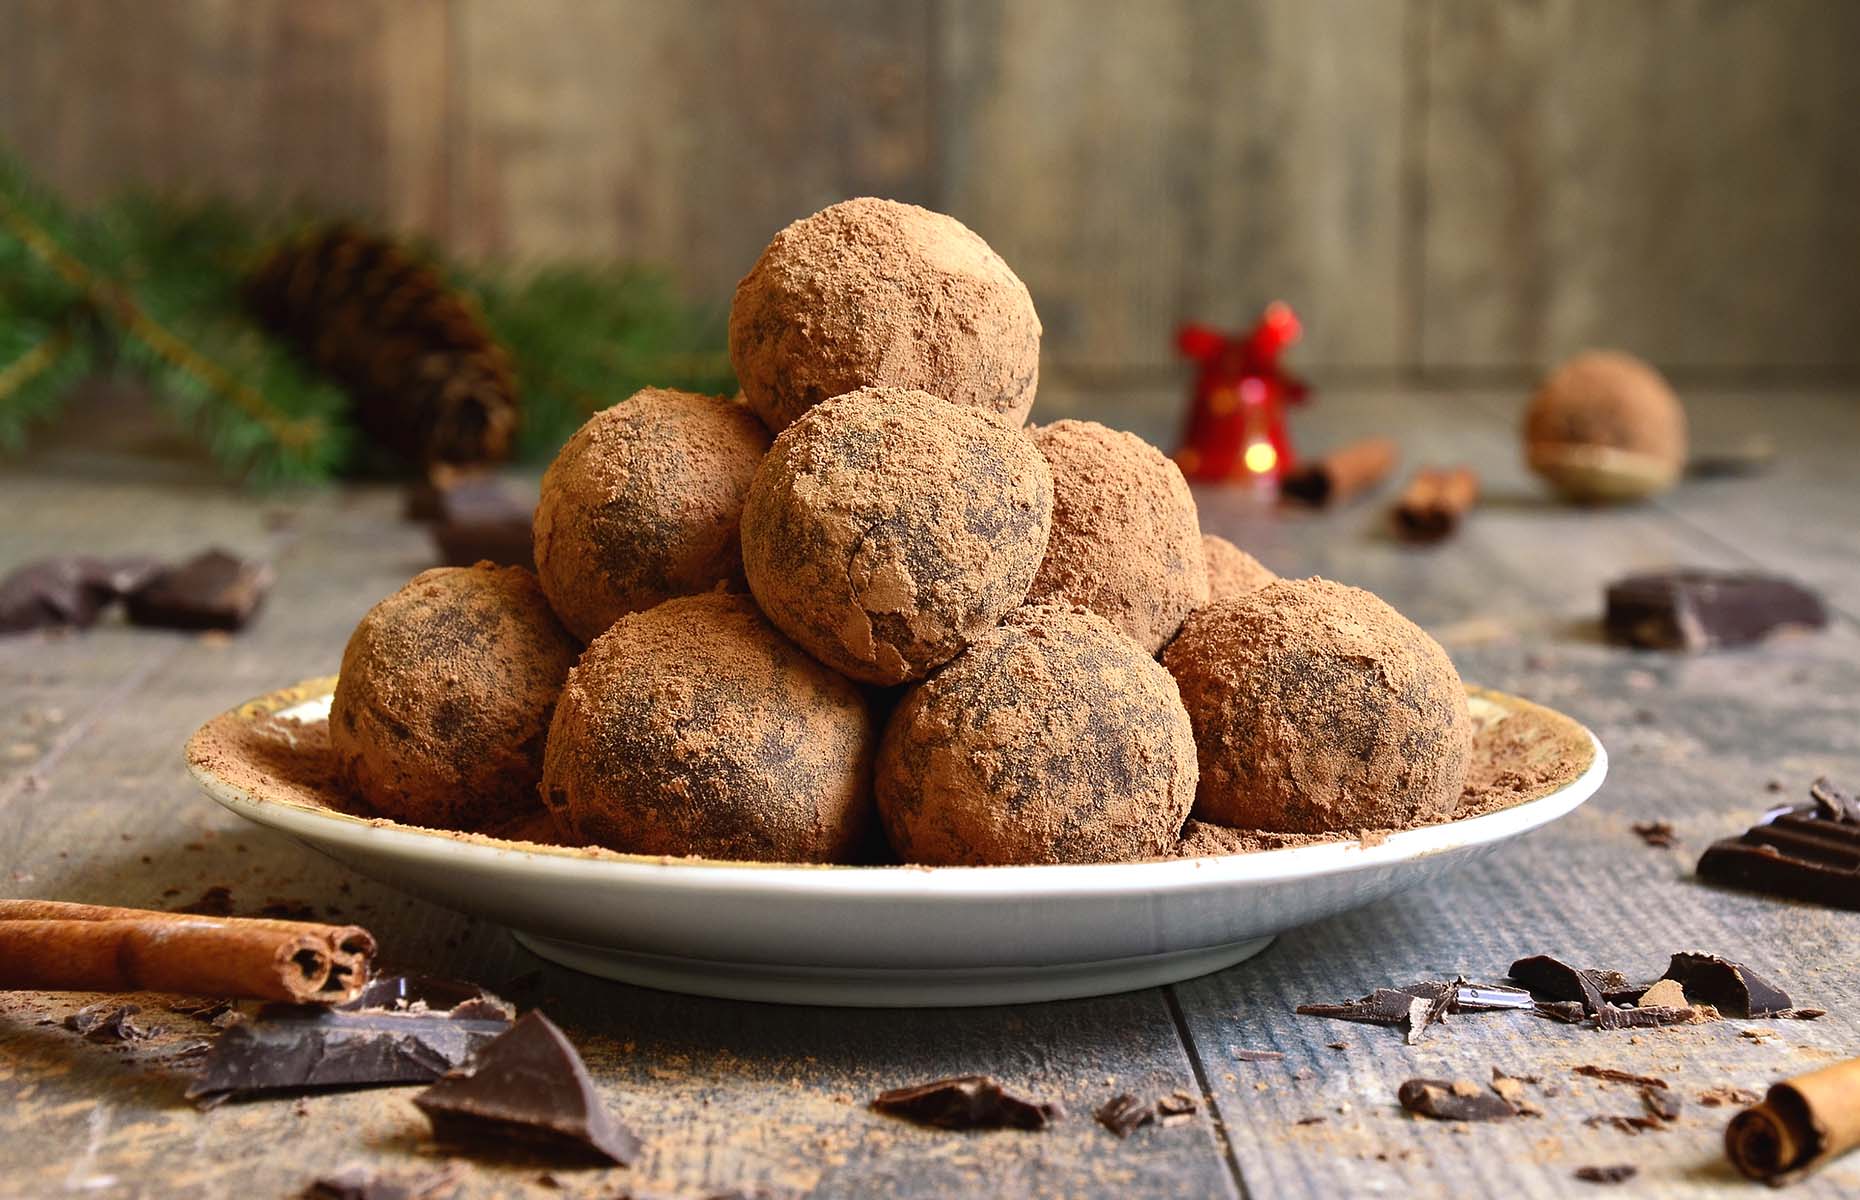 Salted brown sugar caramel chocolate truffles (Image: Liliya Kandrashevich/Shutterstock)